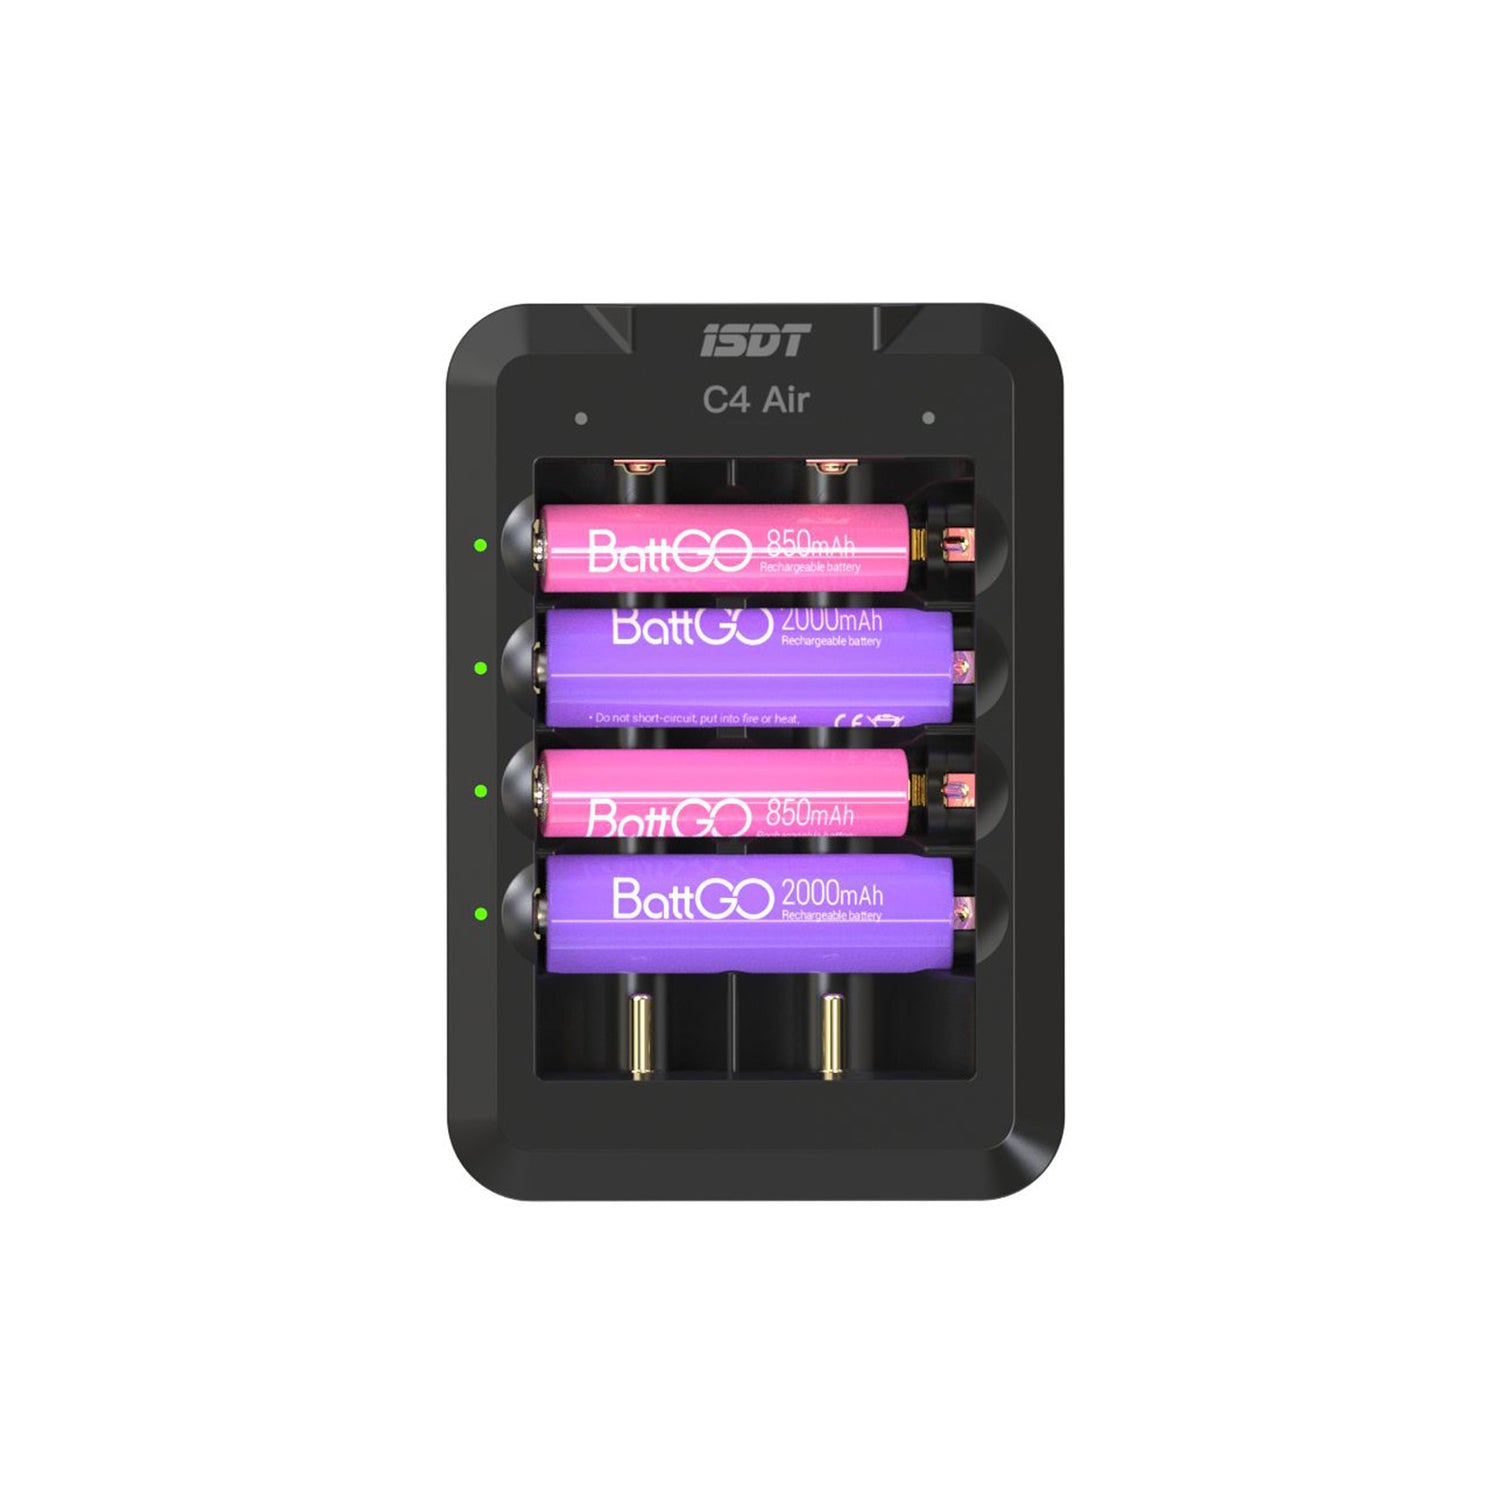 C4 Air Quick Battery Carger, 6 ranuras USB C Cargador de batería doméstica con función de conexión de la aplicación Bluetooth